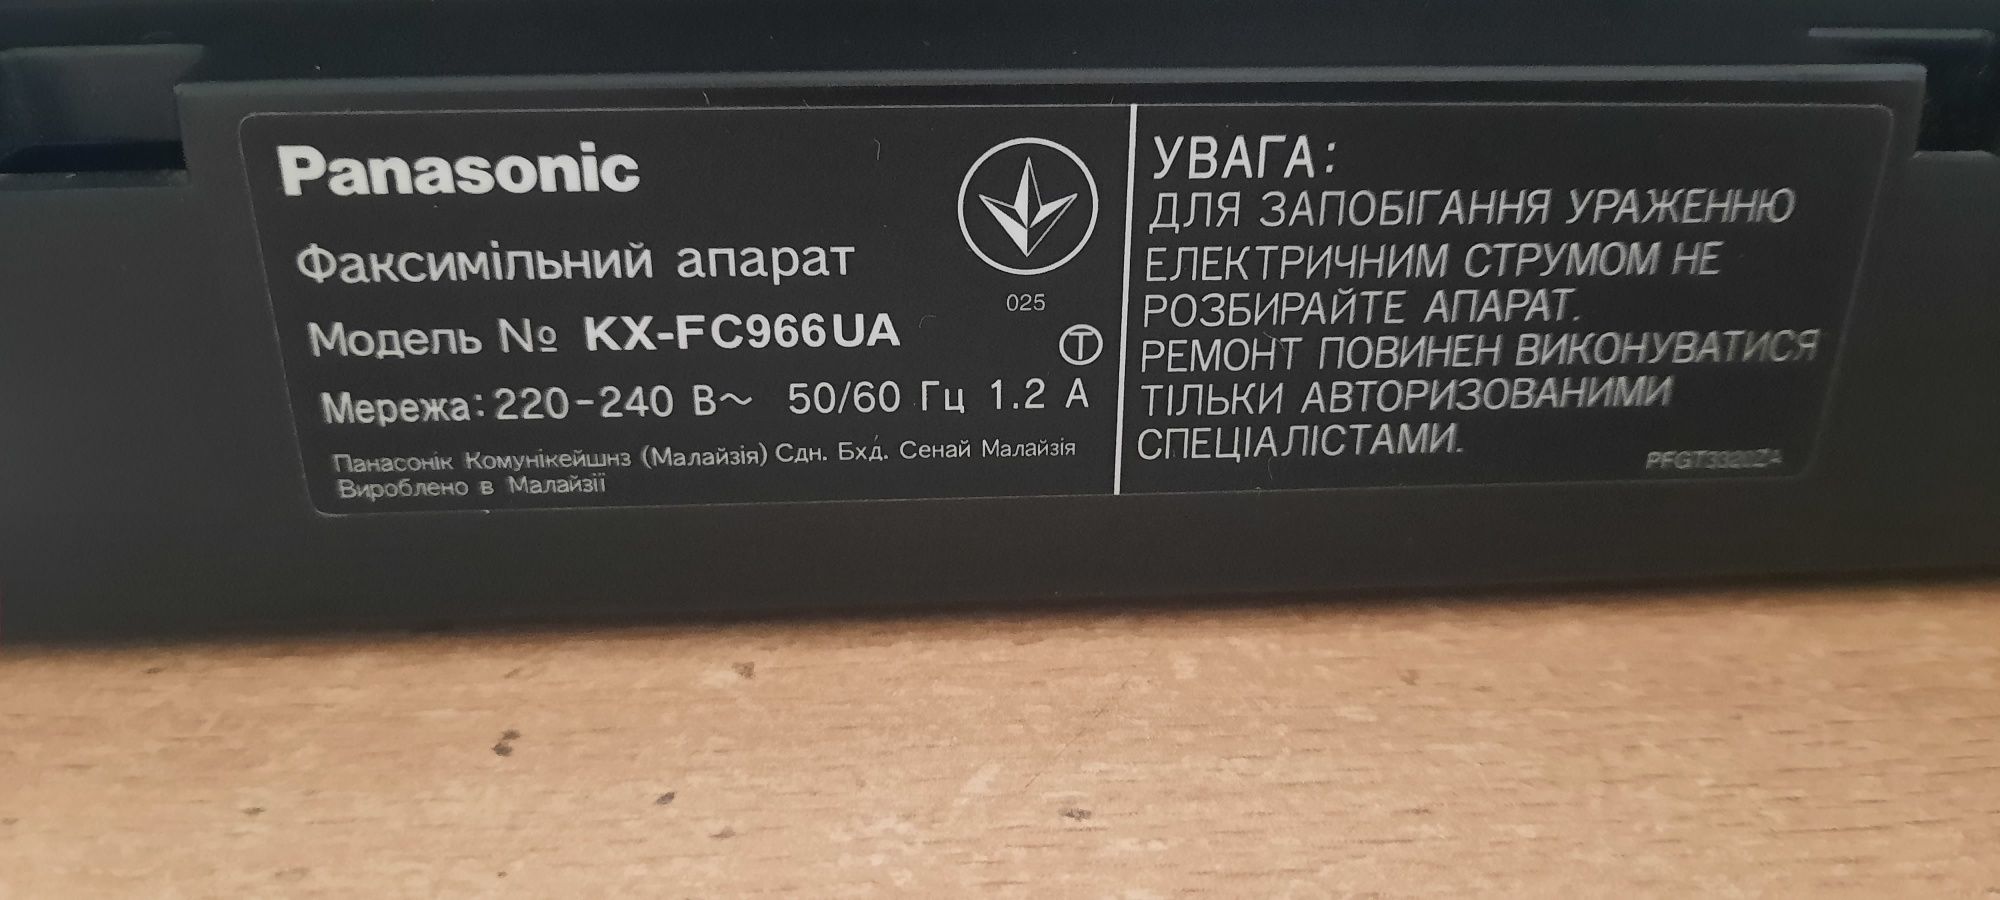 Факс с радио трубкой Panasonic KX-FC966UA